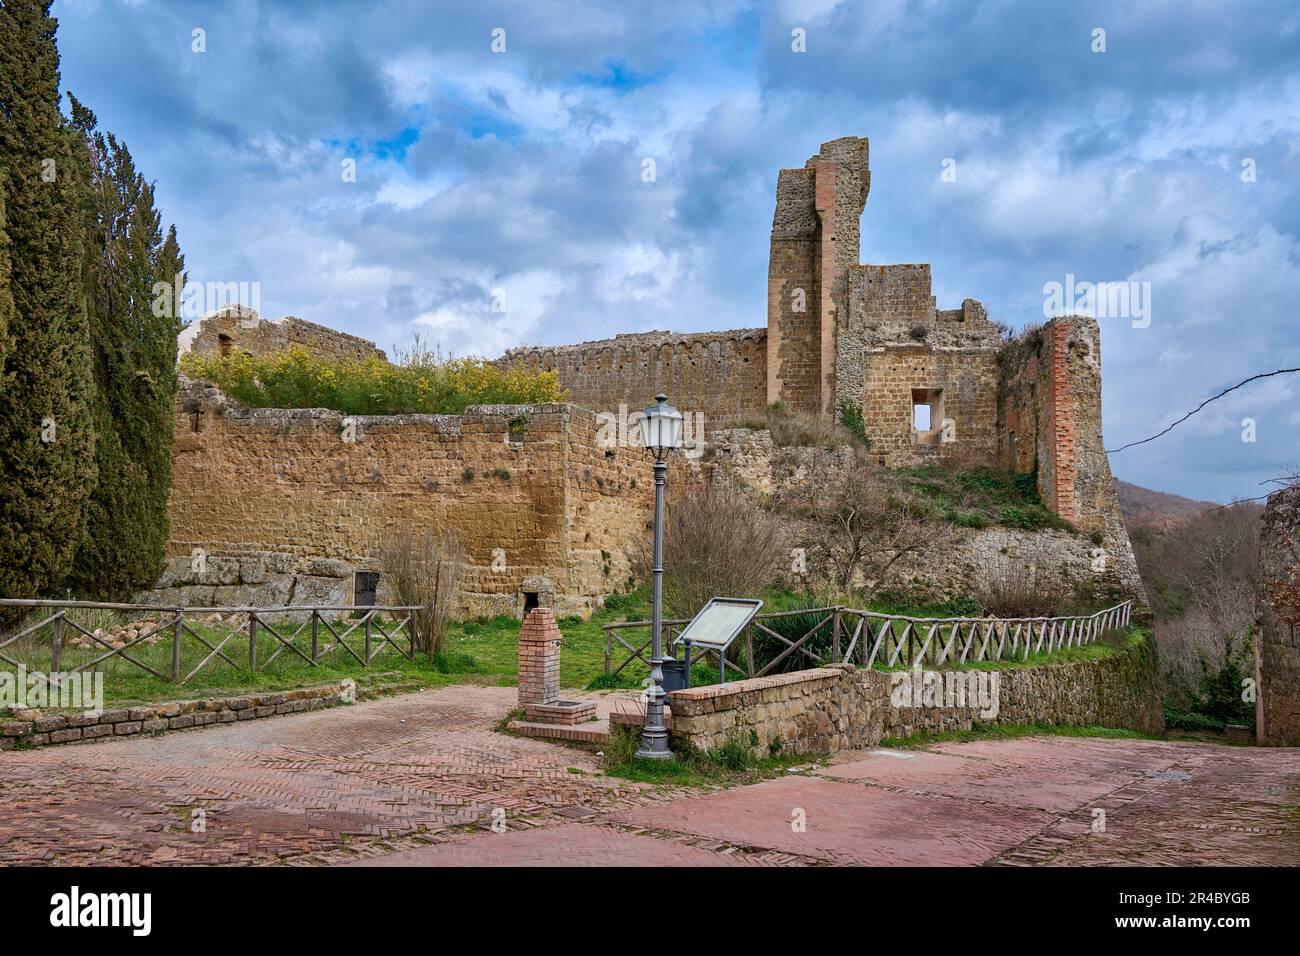 fortress Rocca Aldobrandesca, Sovana, Tuscany, Italy Stock Photo